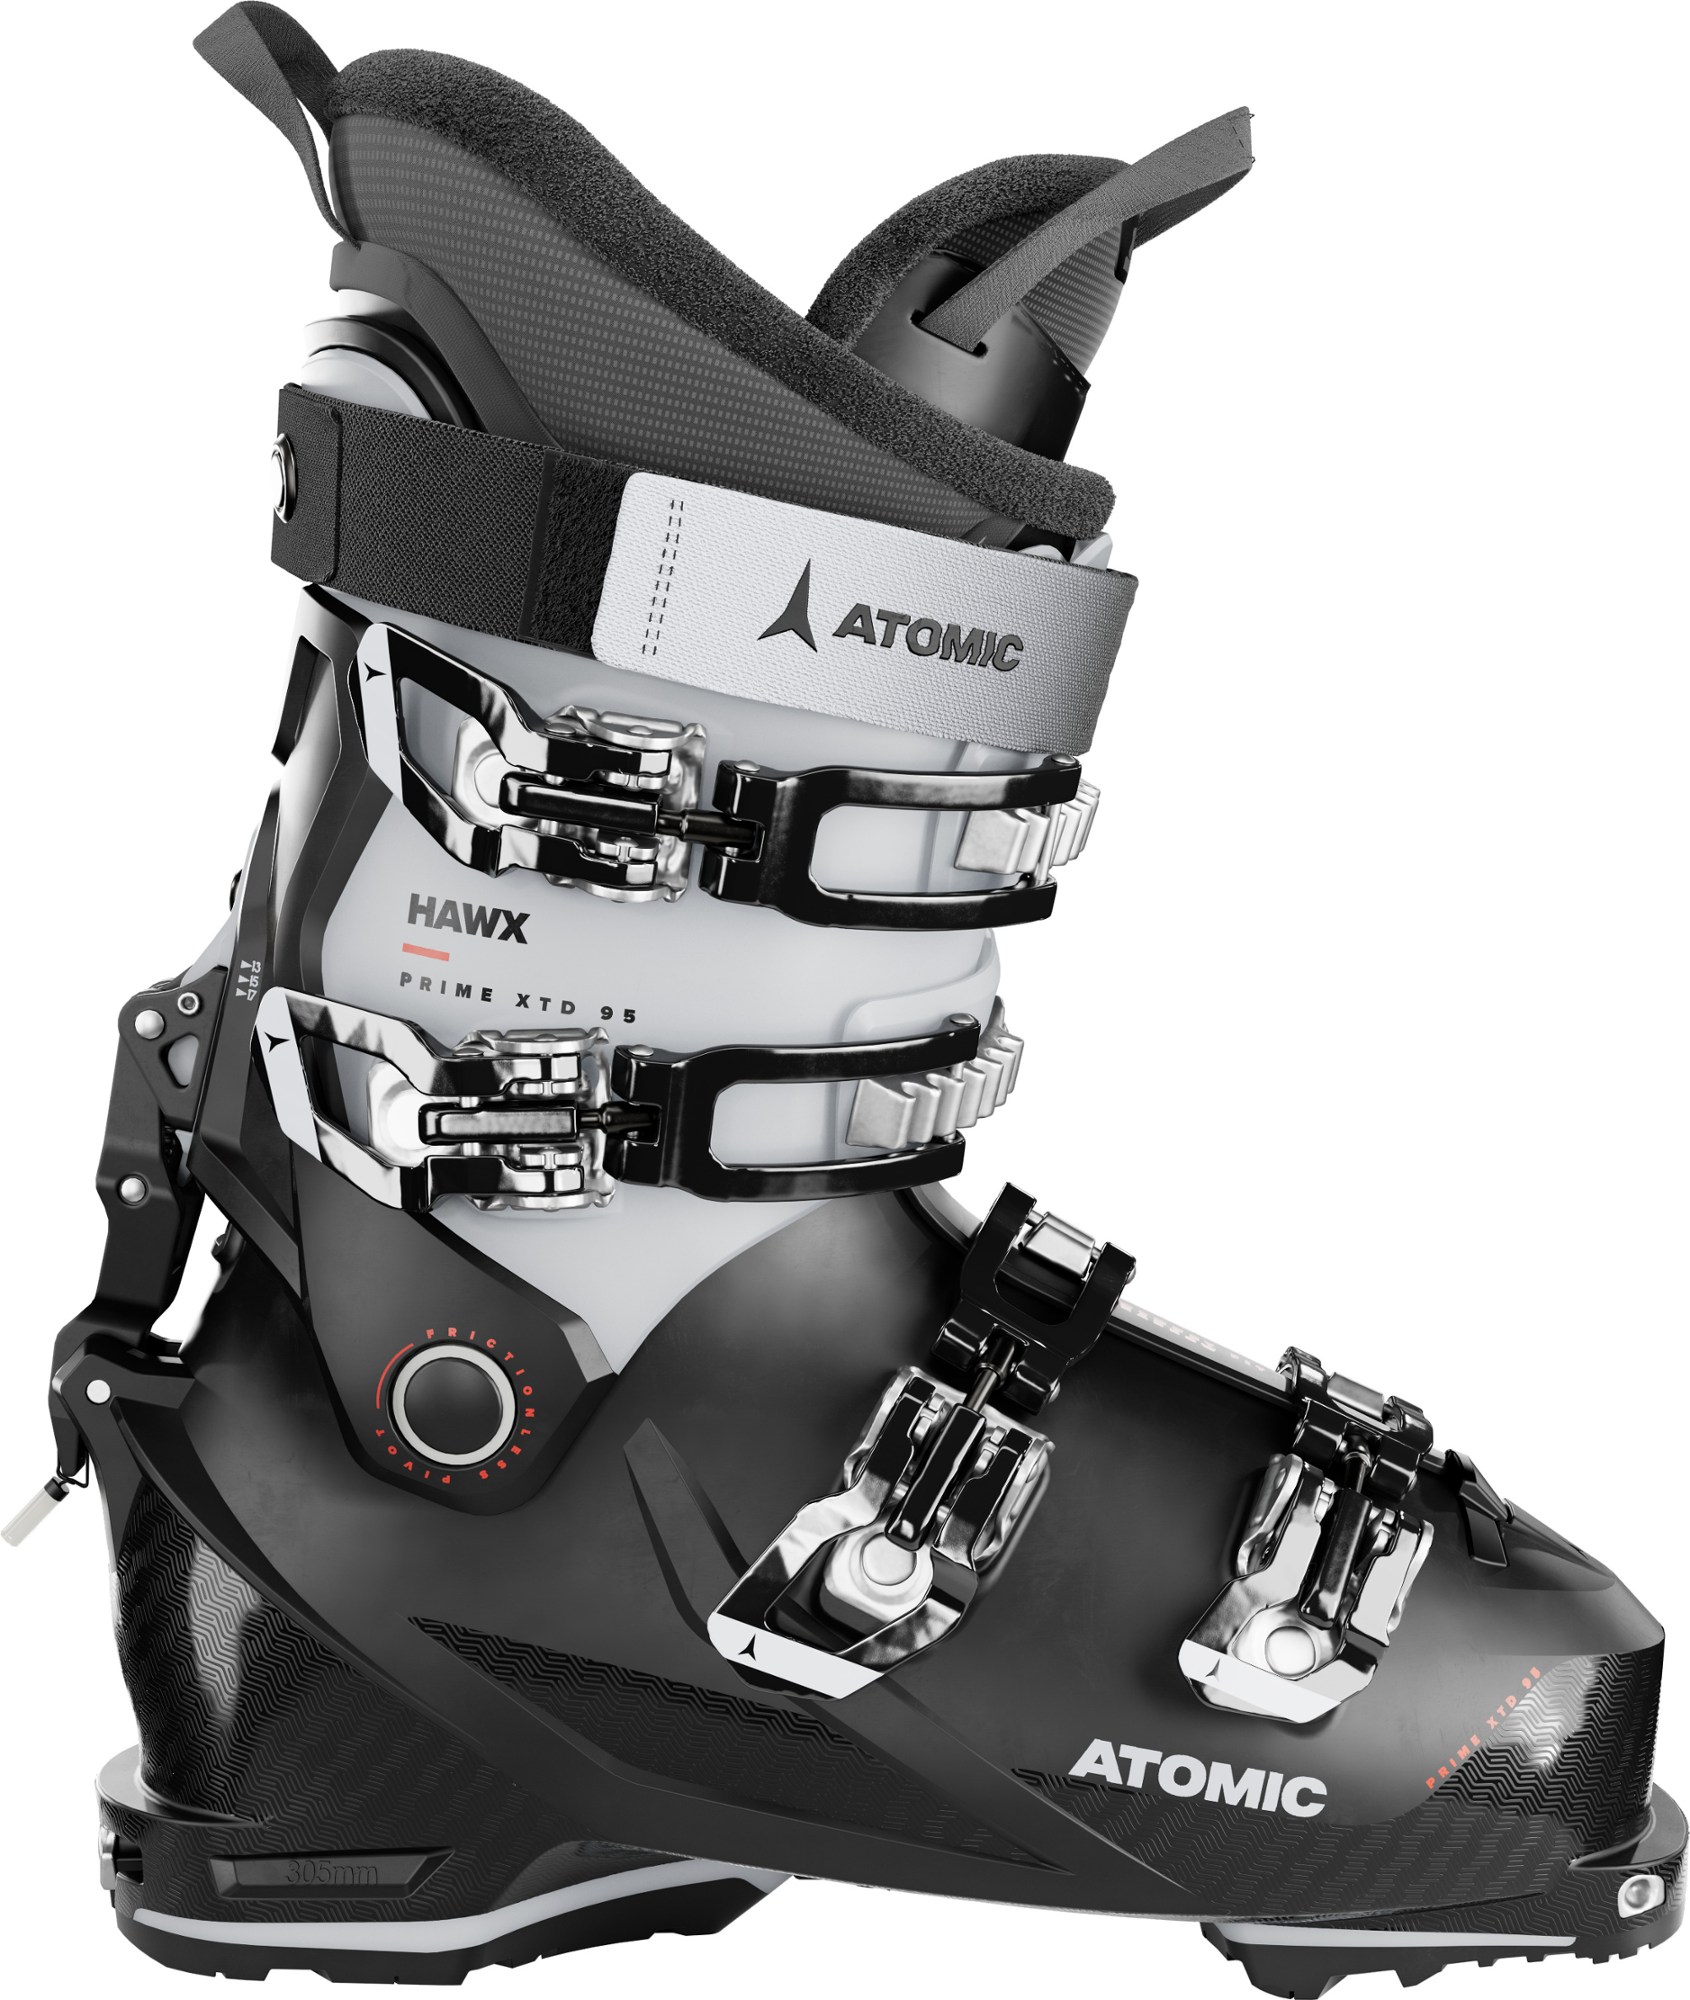 Лыжные ботинки Hawx Prime XTD 95 W GW - женские - 2023/2024 г. Atomic, черный лыжные ботинки hawx ultra 115 s w gw женские 2023 2024 atomic черный